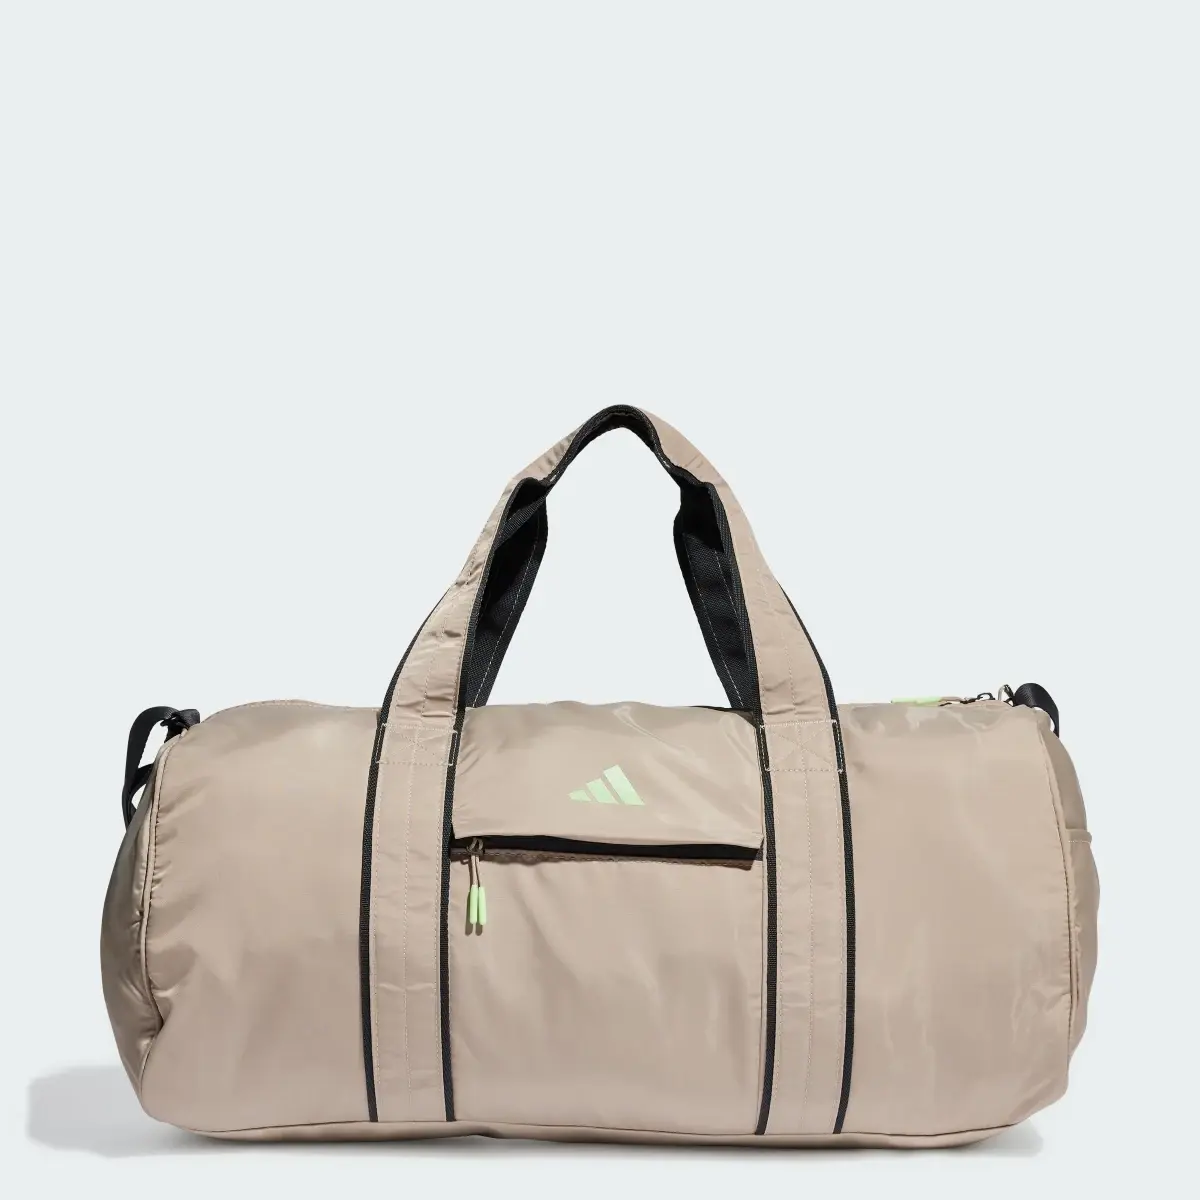 Adidas Yoga Duffel Bag. 1